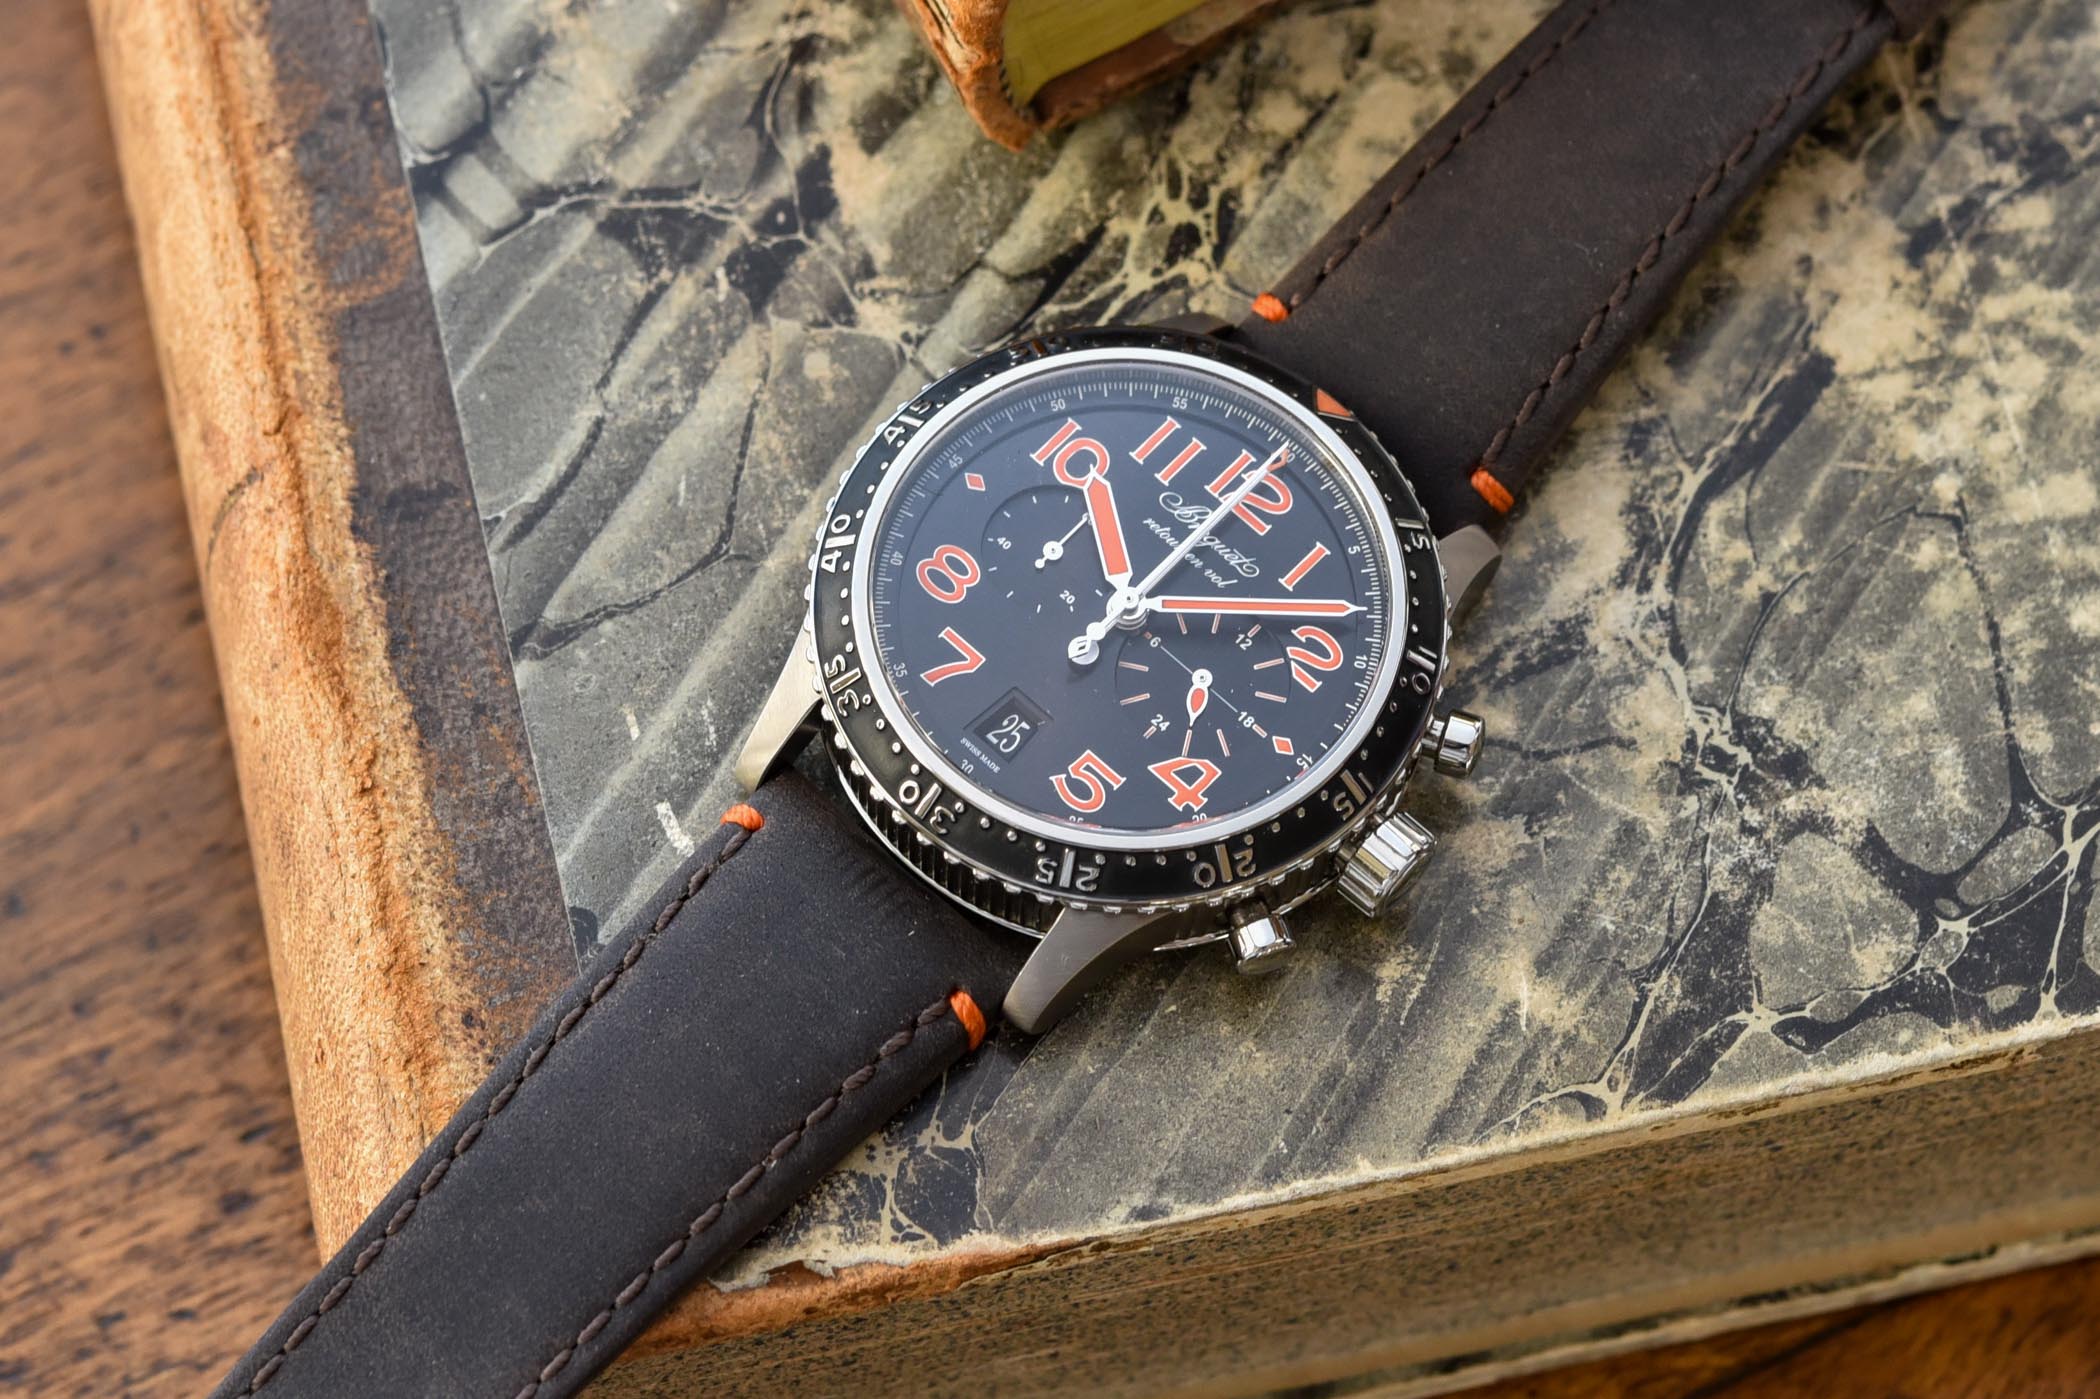 Представляем смелые и яркие часы Breguet Type XXI 3815 в титановом корпусе